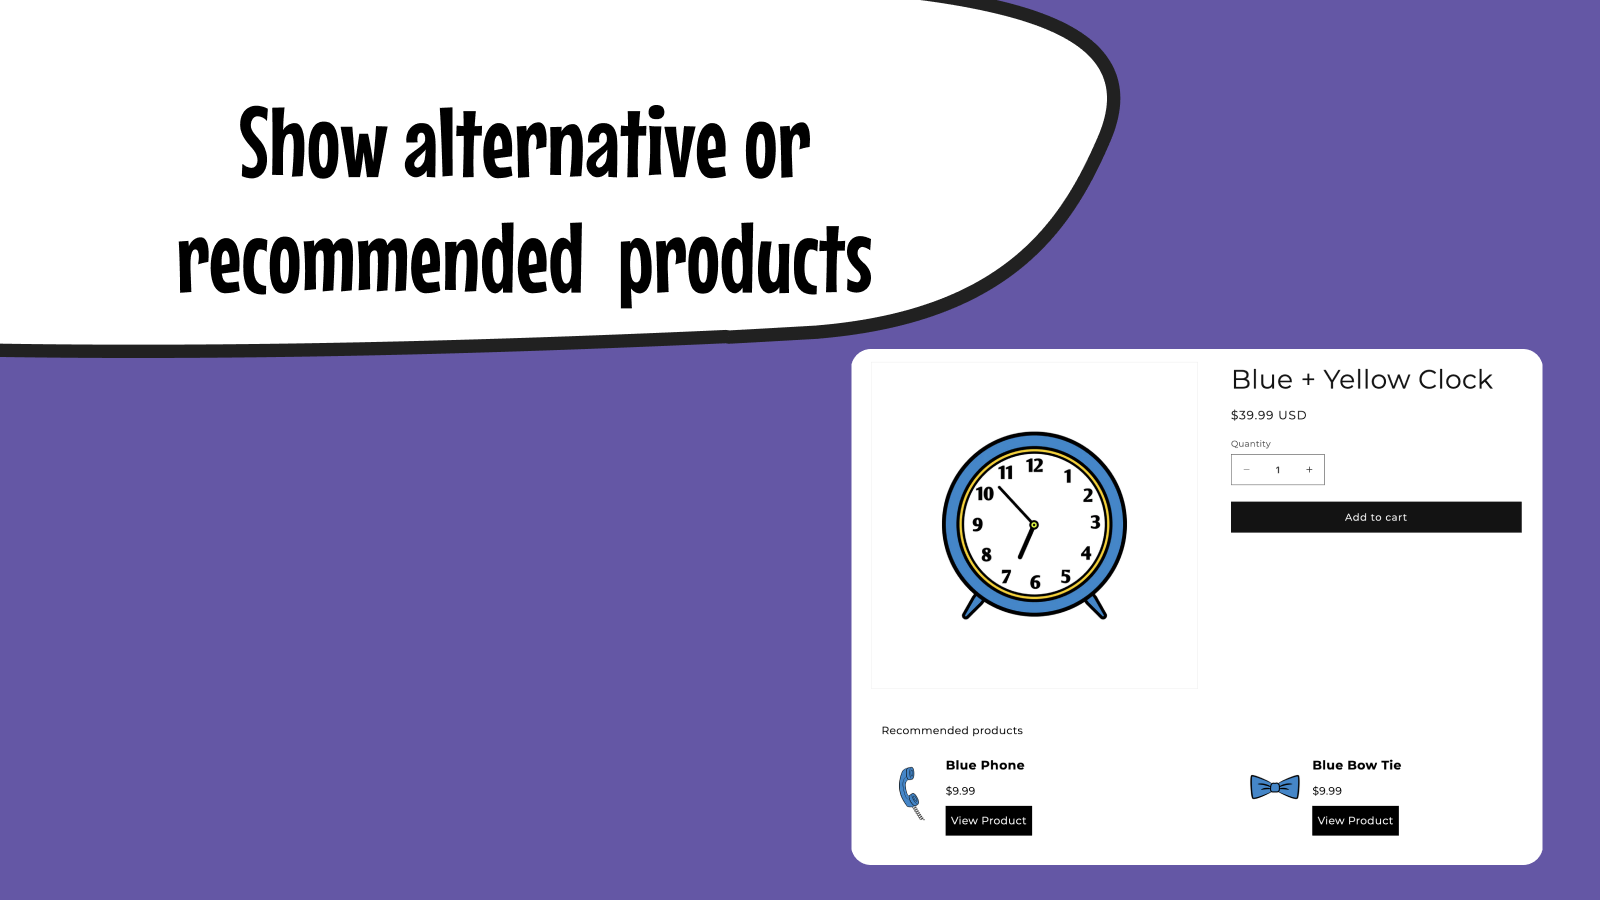 Mostre produtos alternativos ou recomendados